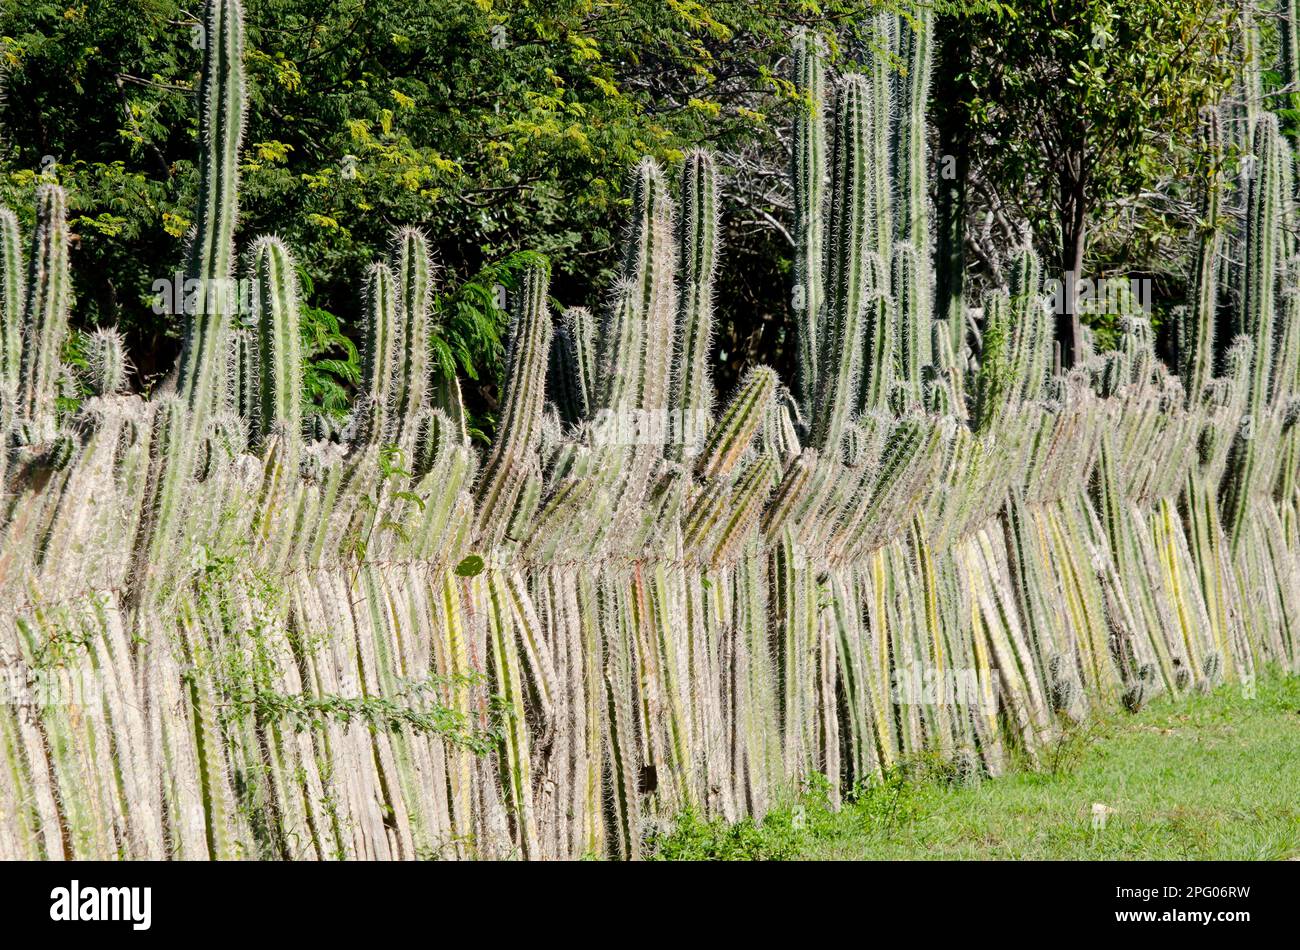 Tige de la bougie cactus (Ritterocereus griseus) utilisé pour les clôtures de bétail, Bonaire, Antilles occidentales, Petites Antilles, Caraïbes Banque D'Images